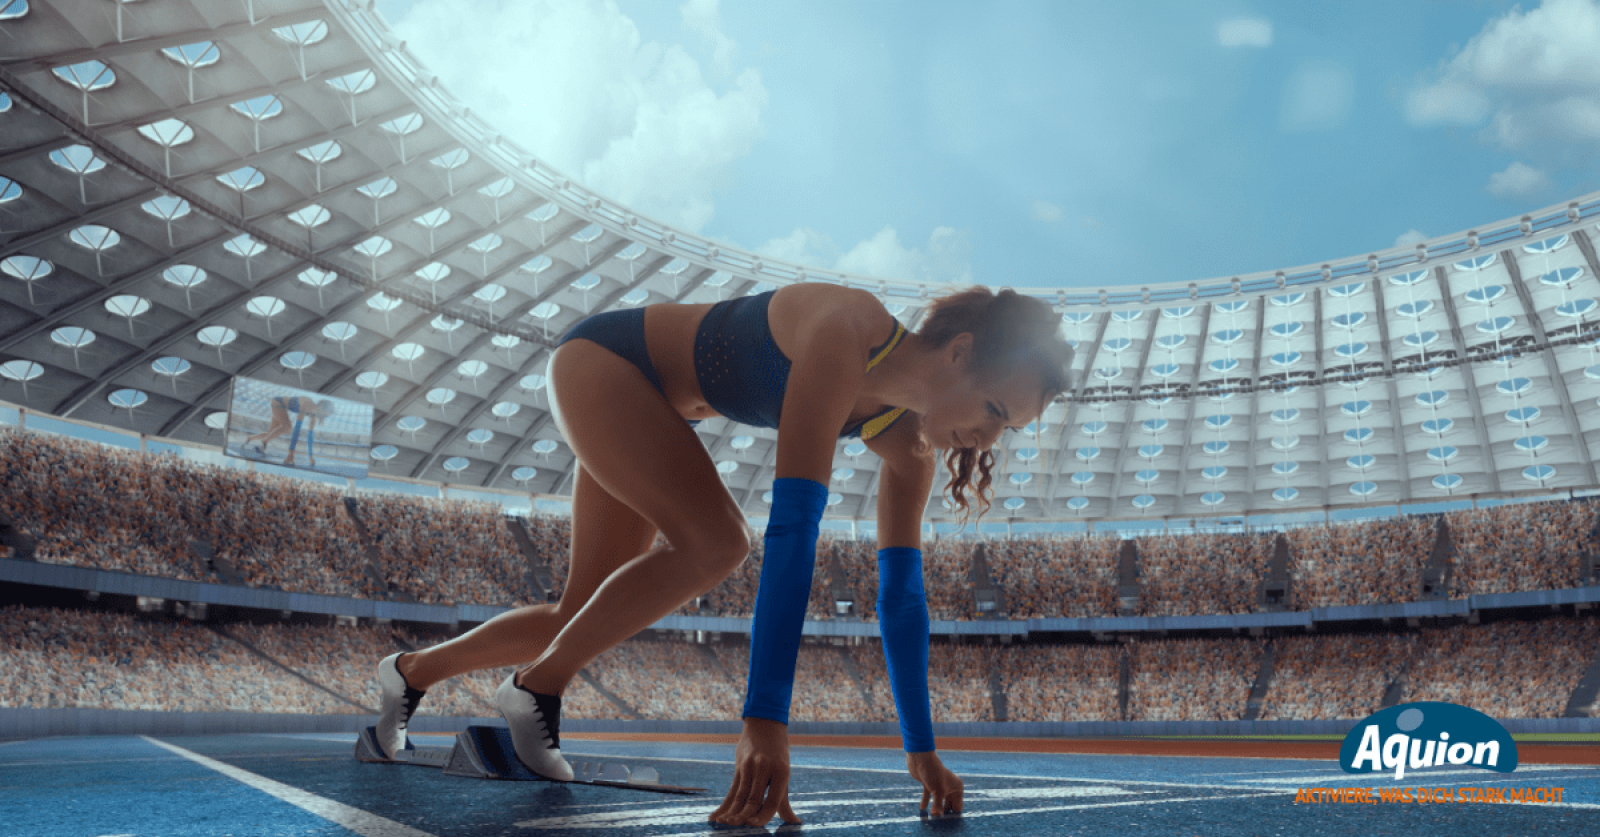 Eine Läuferin in einem blauen Laufset ist in einem voll besetzten Sportstadion und befindet sich in der Startposition, um mit dem Rennen zu beginnen. Sie hat sich auf ihren Fingern abgestützt und die Füße auf die Starthilfe gestellt.